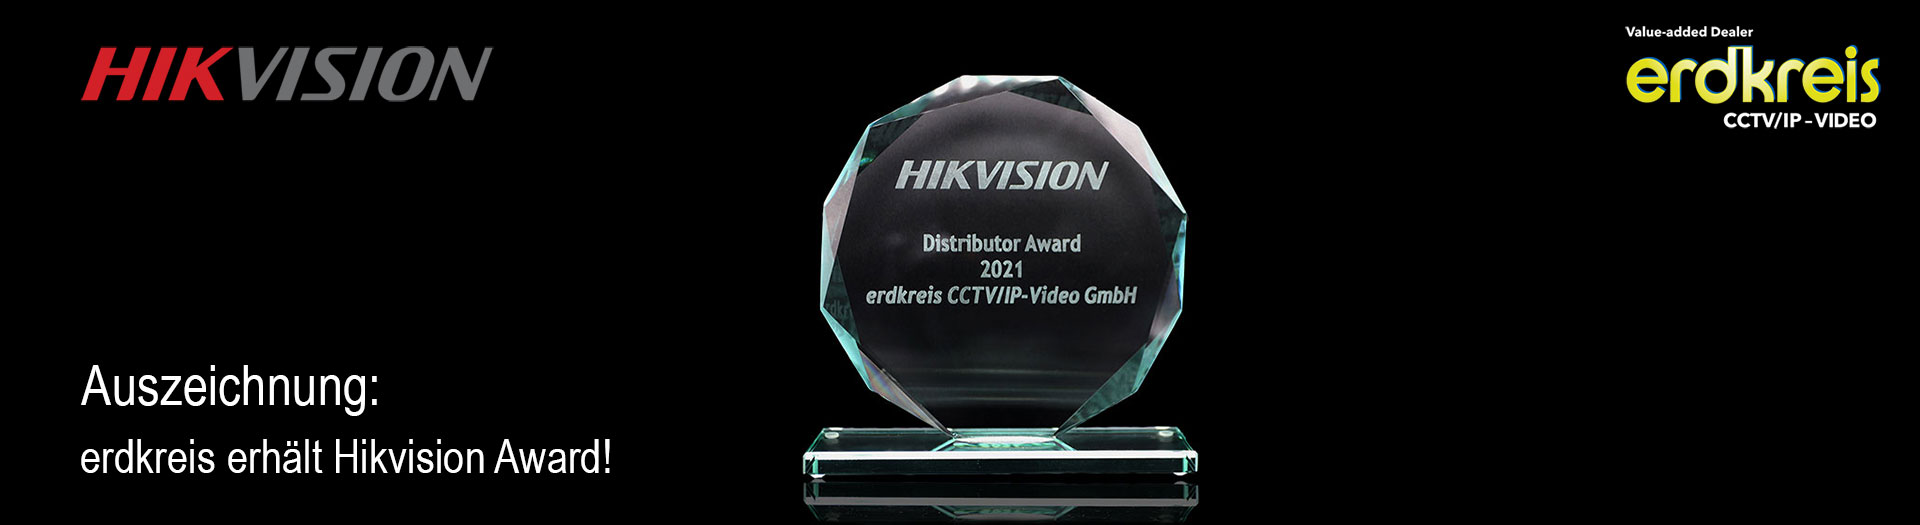 Hikvision Award2 banner 1920px - erdkreis erhält Hikvision Partner-Award 2021